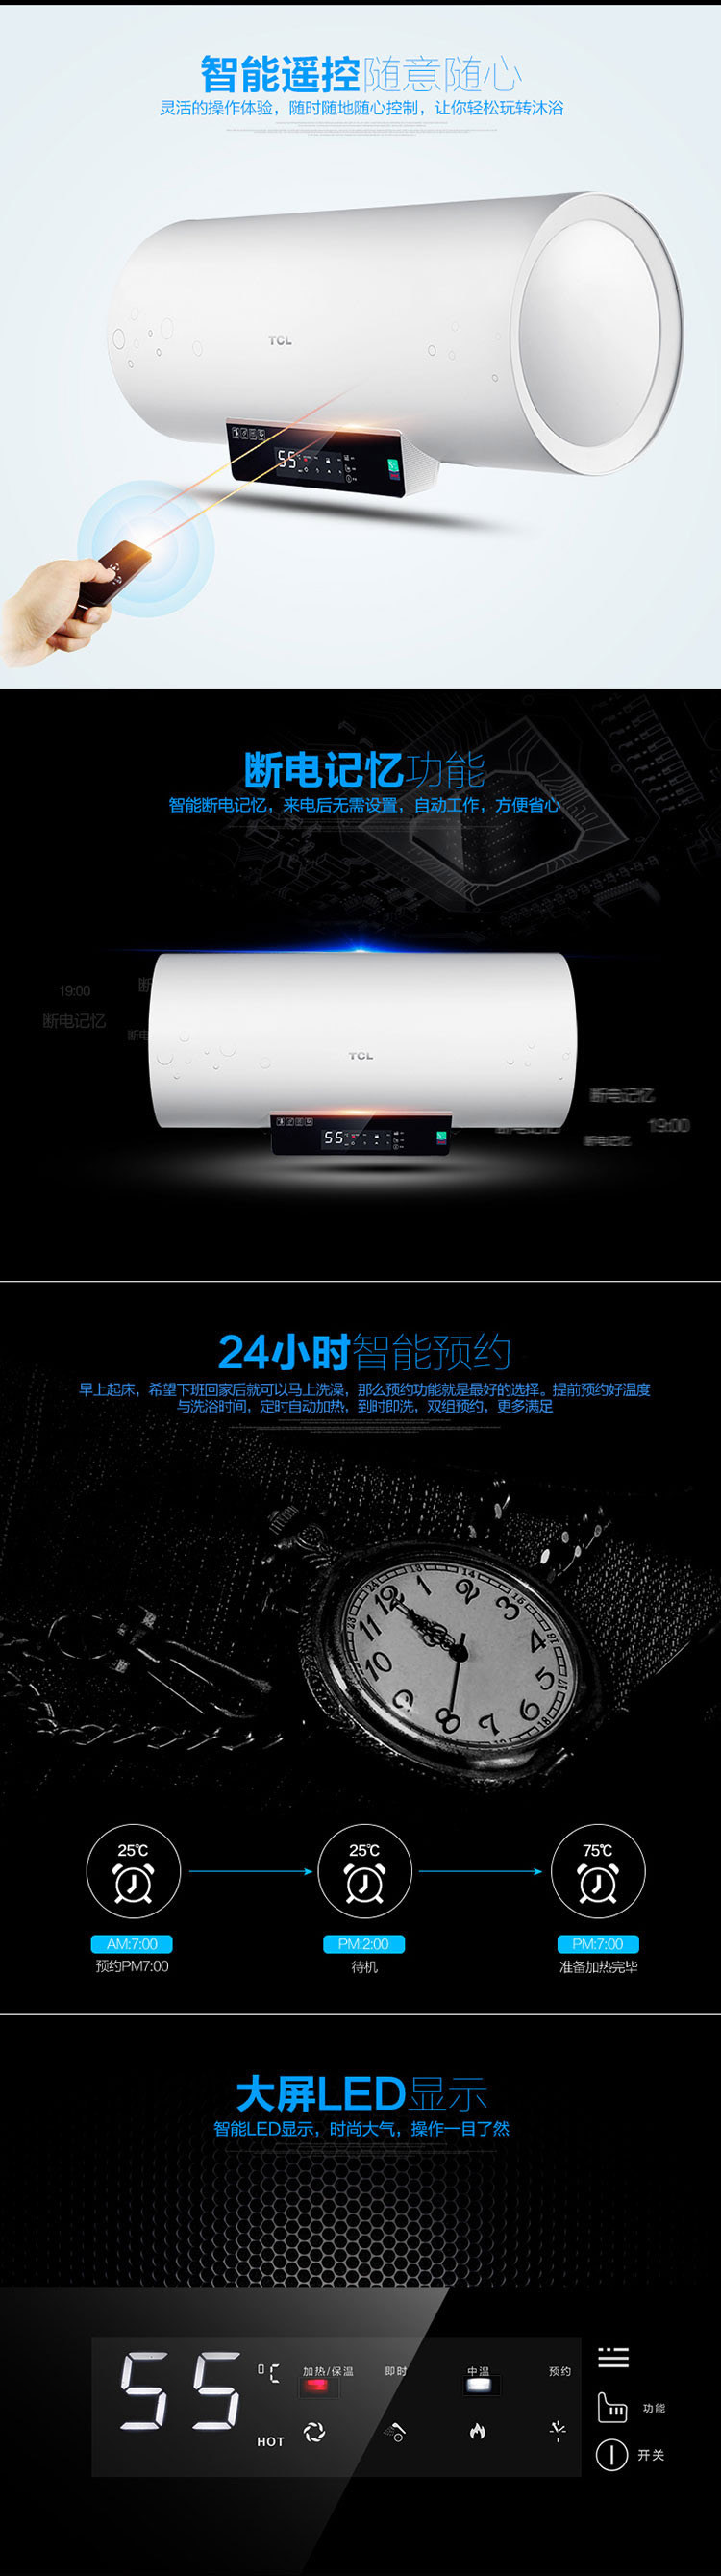 【邮乐新乡馆】TCL电热水器TD60-DE01智能遥控家用酒店用热水器